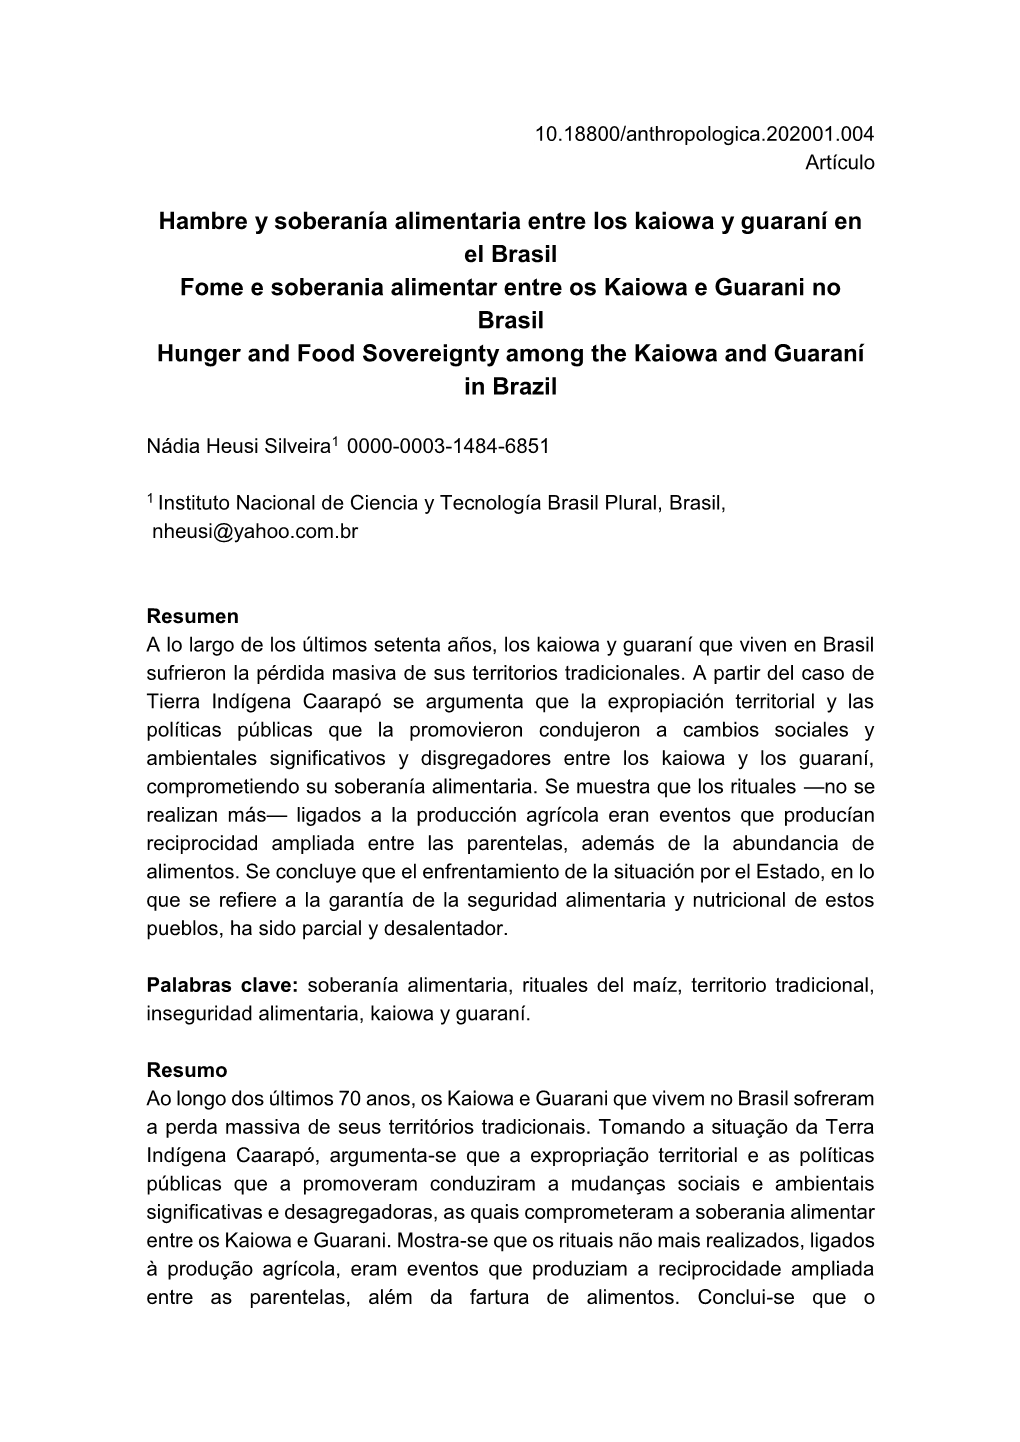 Hambre Y Soberanía Alimentaria Entre Los Kaiowa Y Guaraní En El Brasil